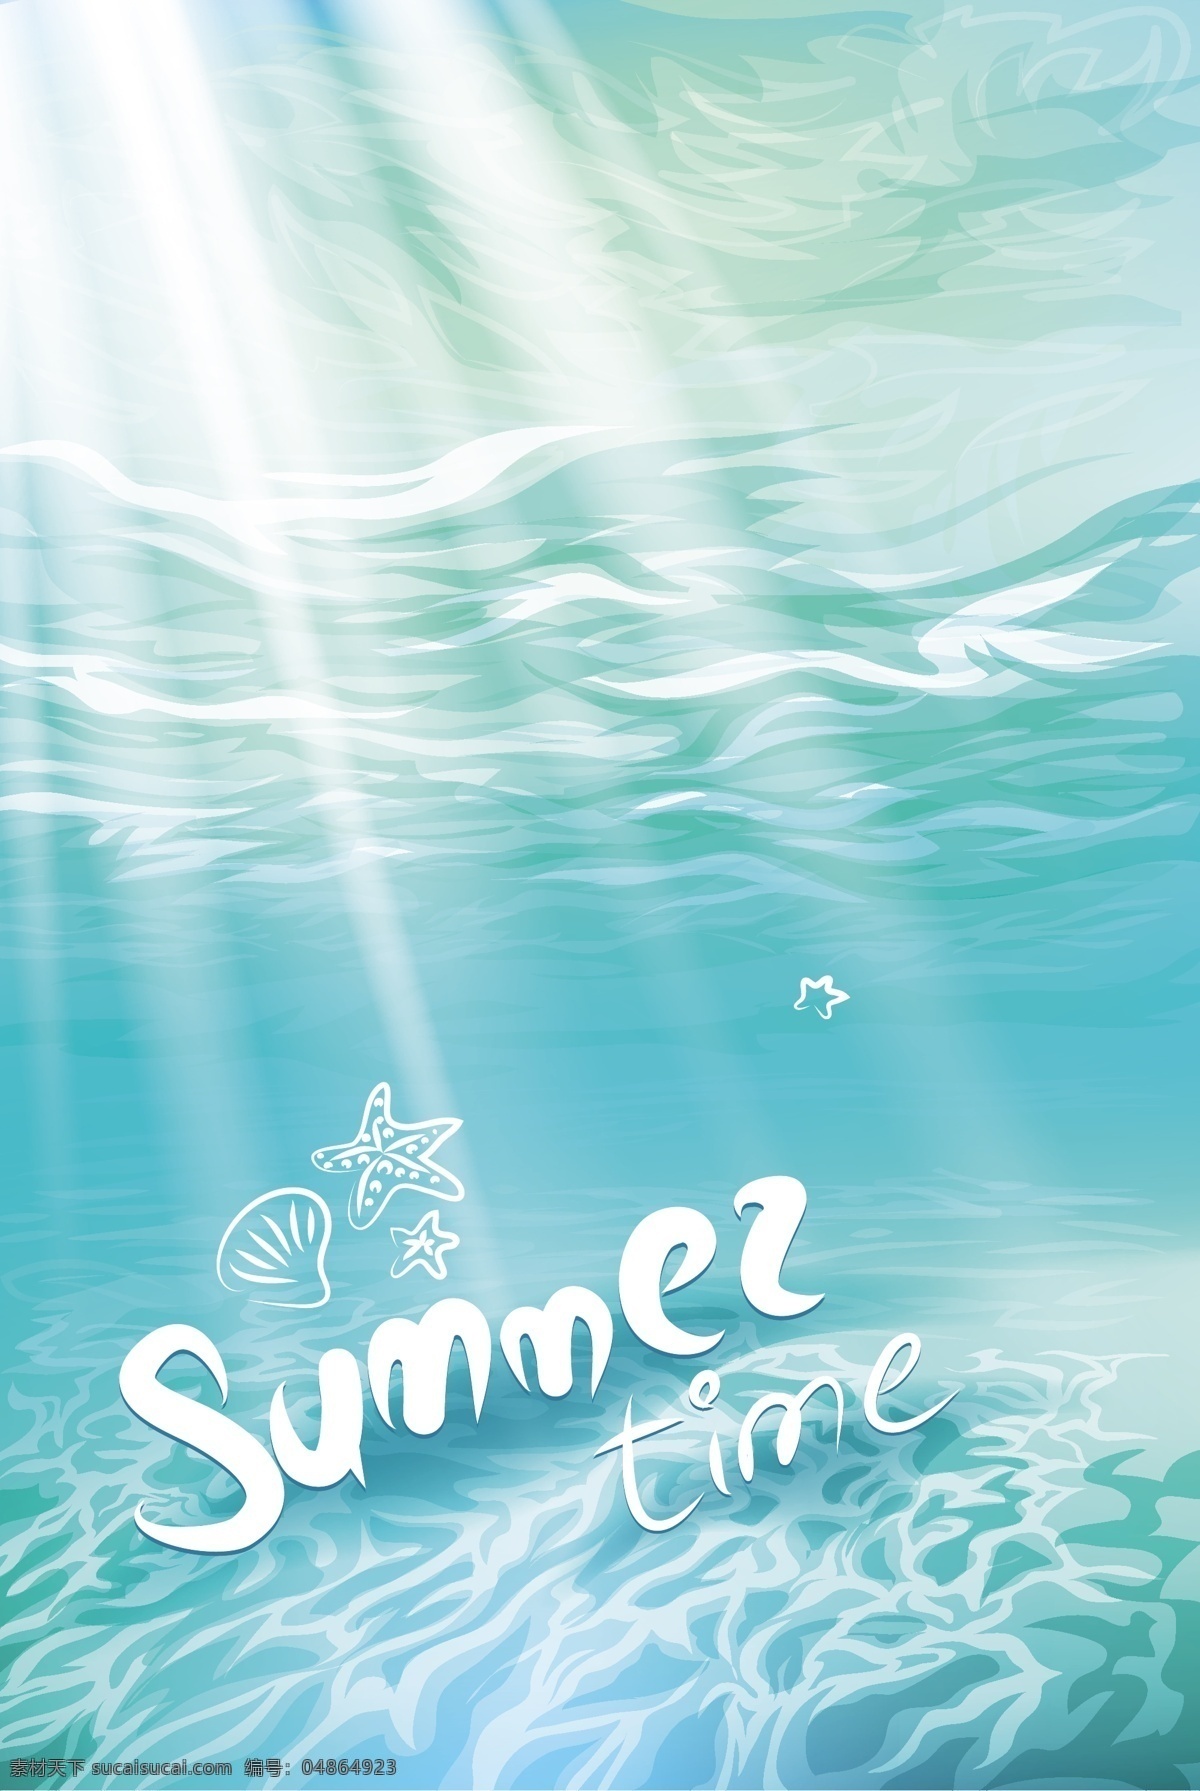 阳光 进 海水 矢量 插画 绿色 海底 英文字 风景 创意 涂鸦 小清新 卡通 填充 背景 海报 广告 包装 印刷 夏天